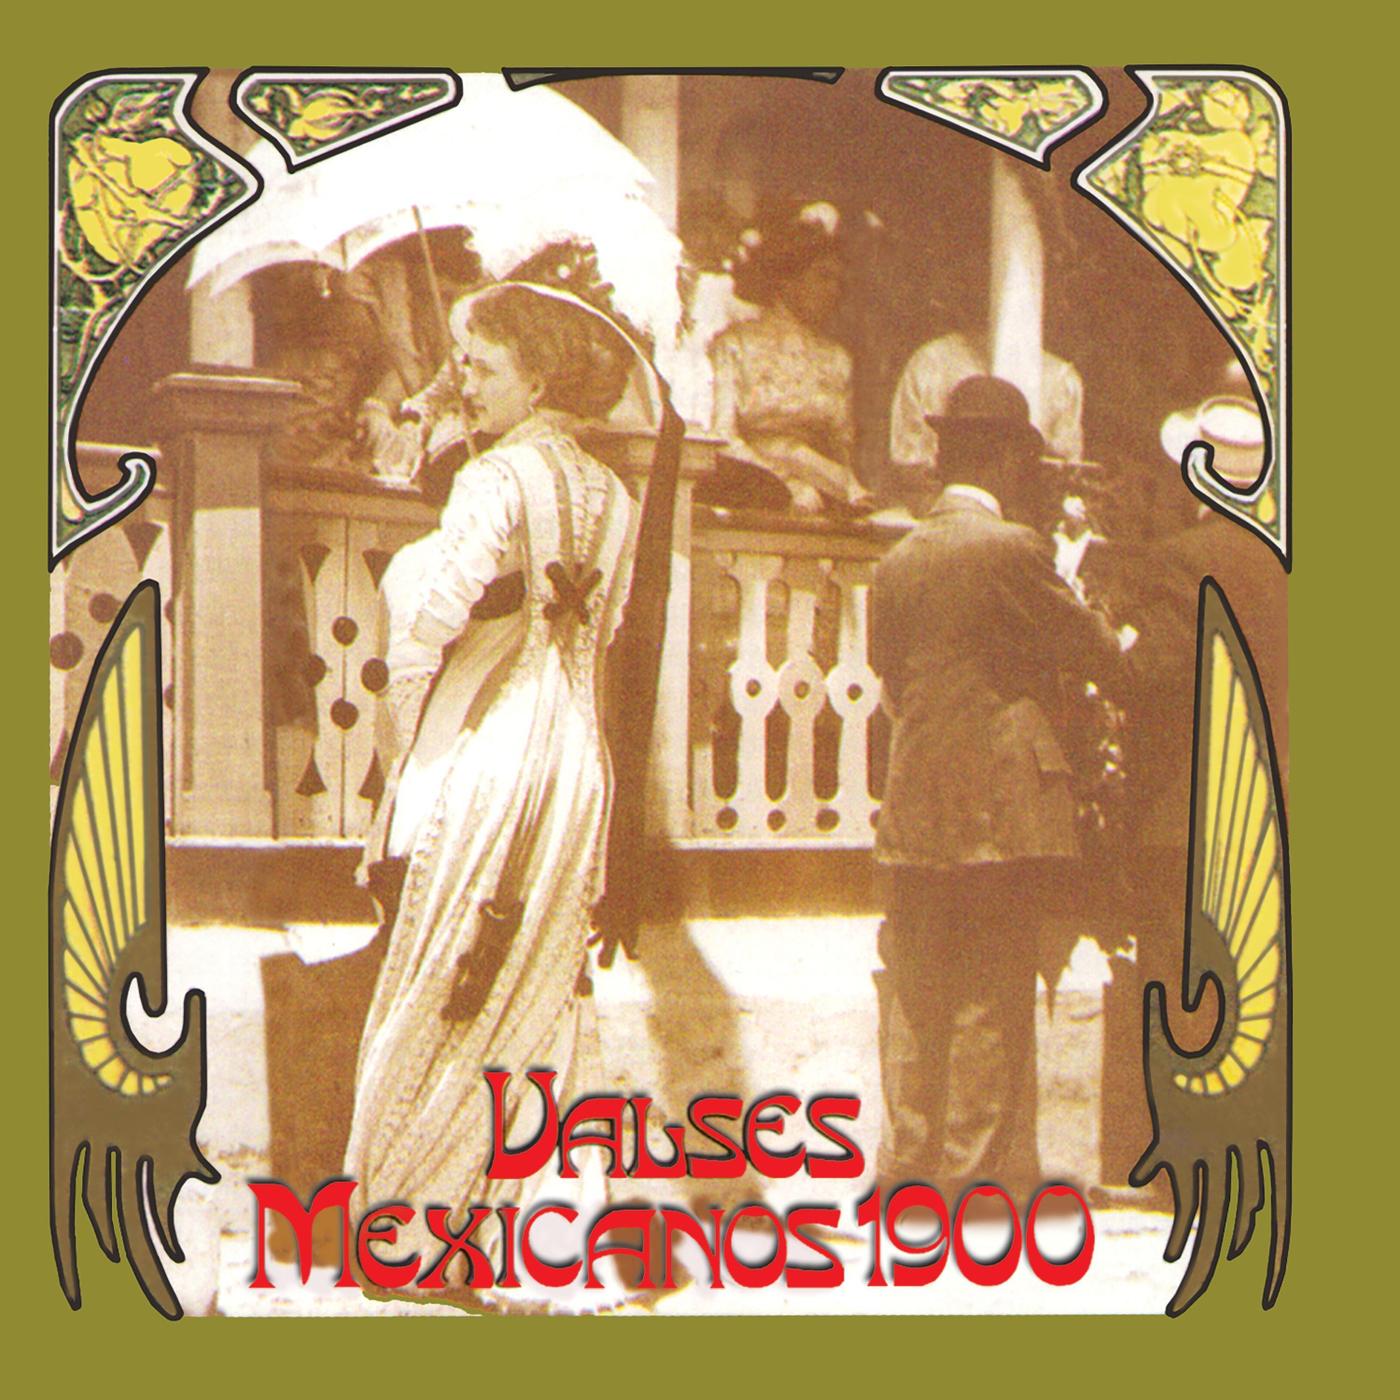 Dios Nunca Muere歌词 歌手Cuarteto Latinoamericano-专辑Valses Mexicanos 1900-单曲《Dios Nunca Muere》LRC歌词下载